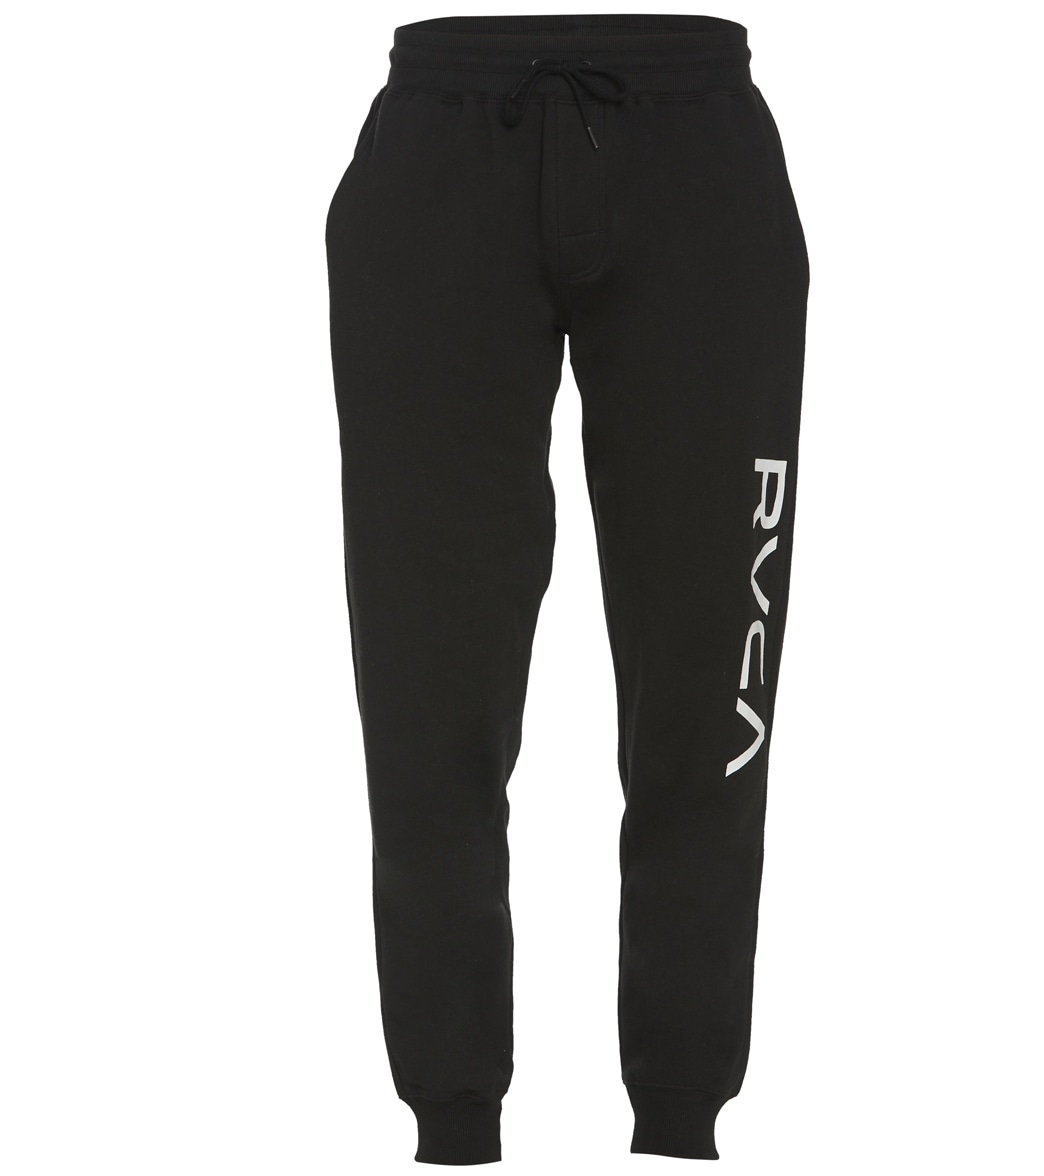 Rvca Men's Big Sweatpants - Black Large Cotton/Polyester - Swimoutlet.com